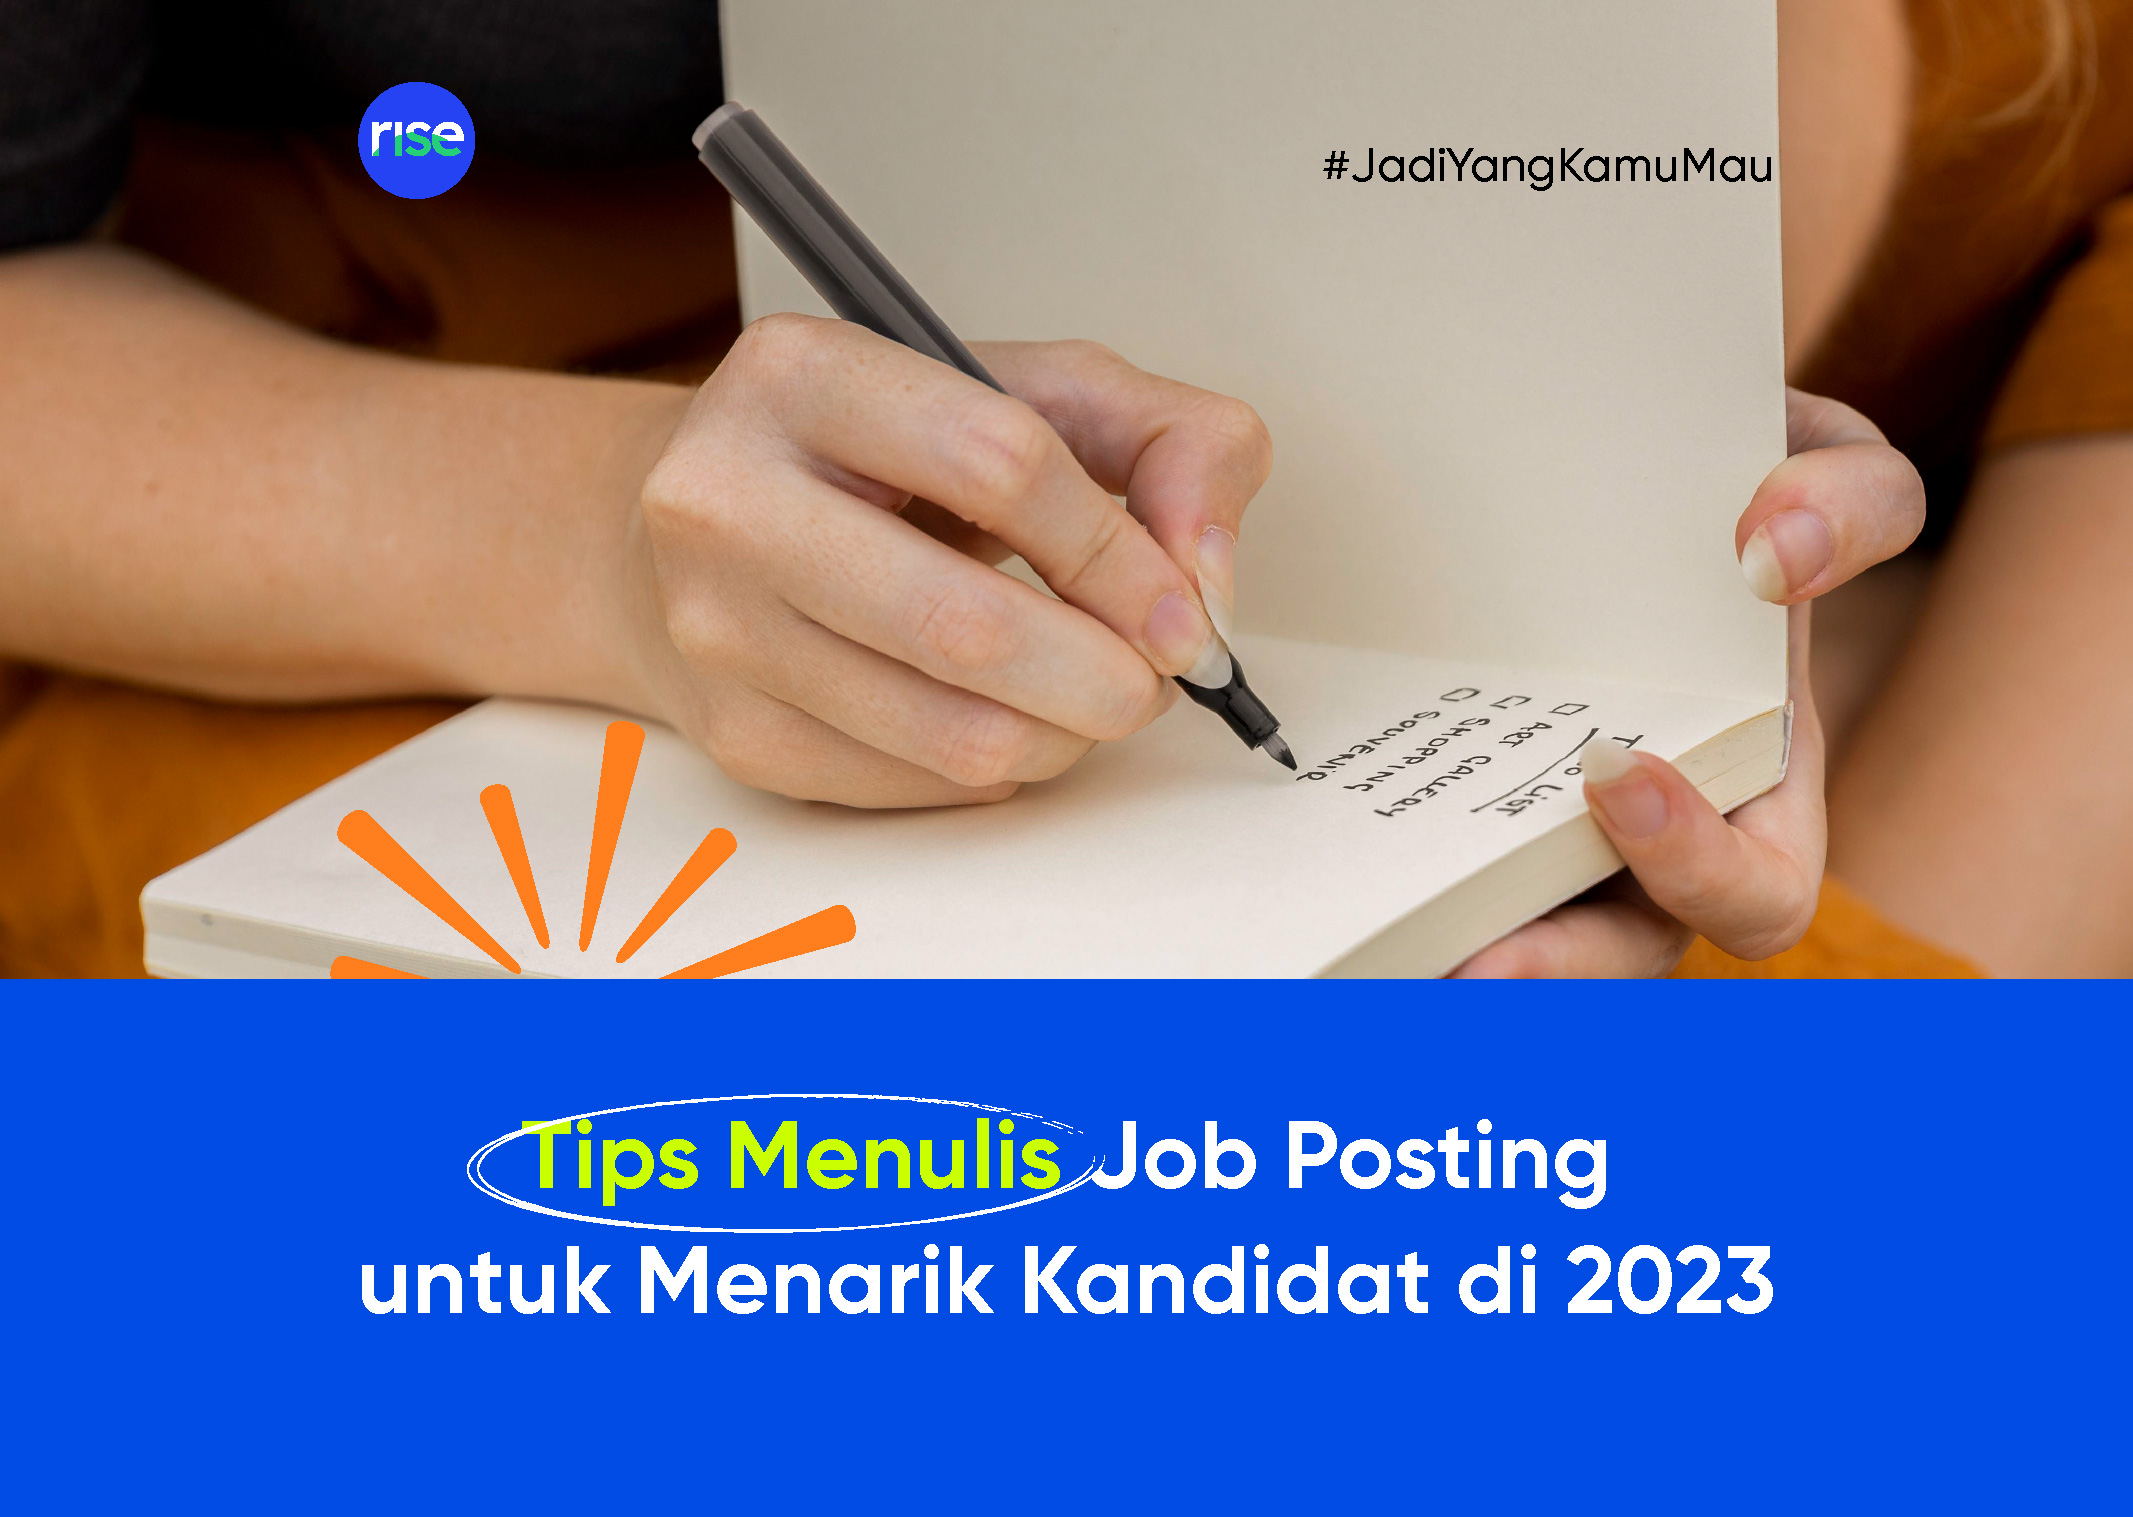 Tips Menulis Job Posting untuk Menarik Kandidat di 2023